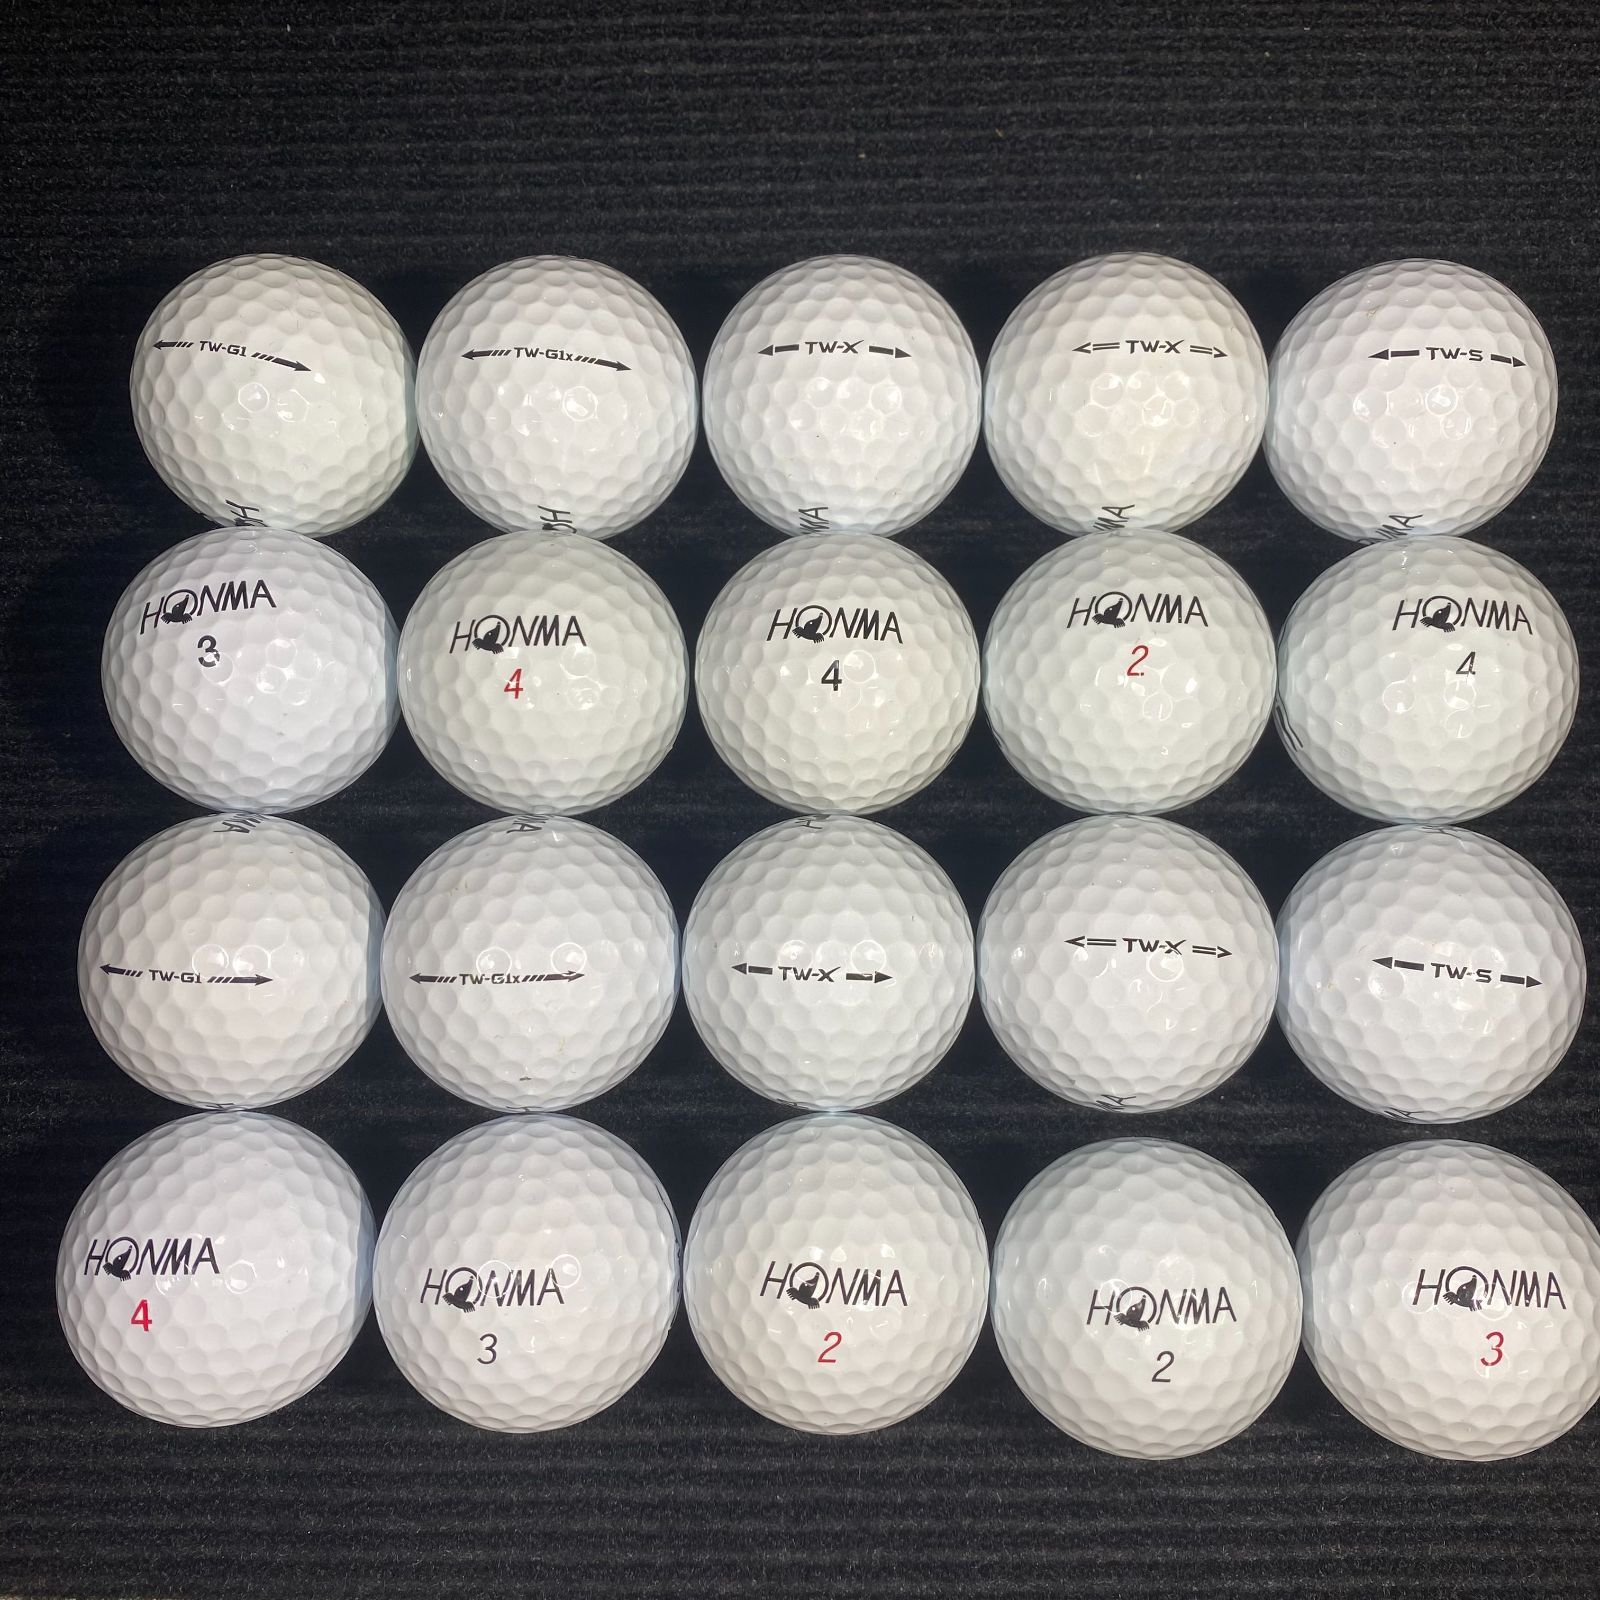 ロストボール HONMA ホンマゴルフ TWシリーズ（ホワイト） 20球セット ゴルフボール【美品】 - メルカリ